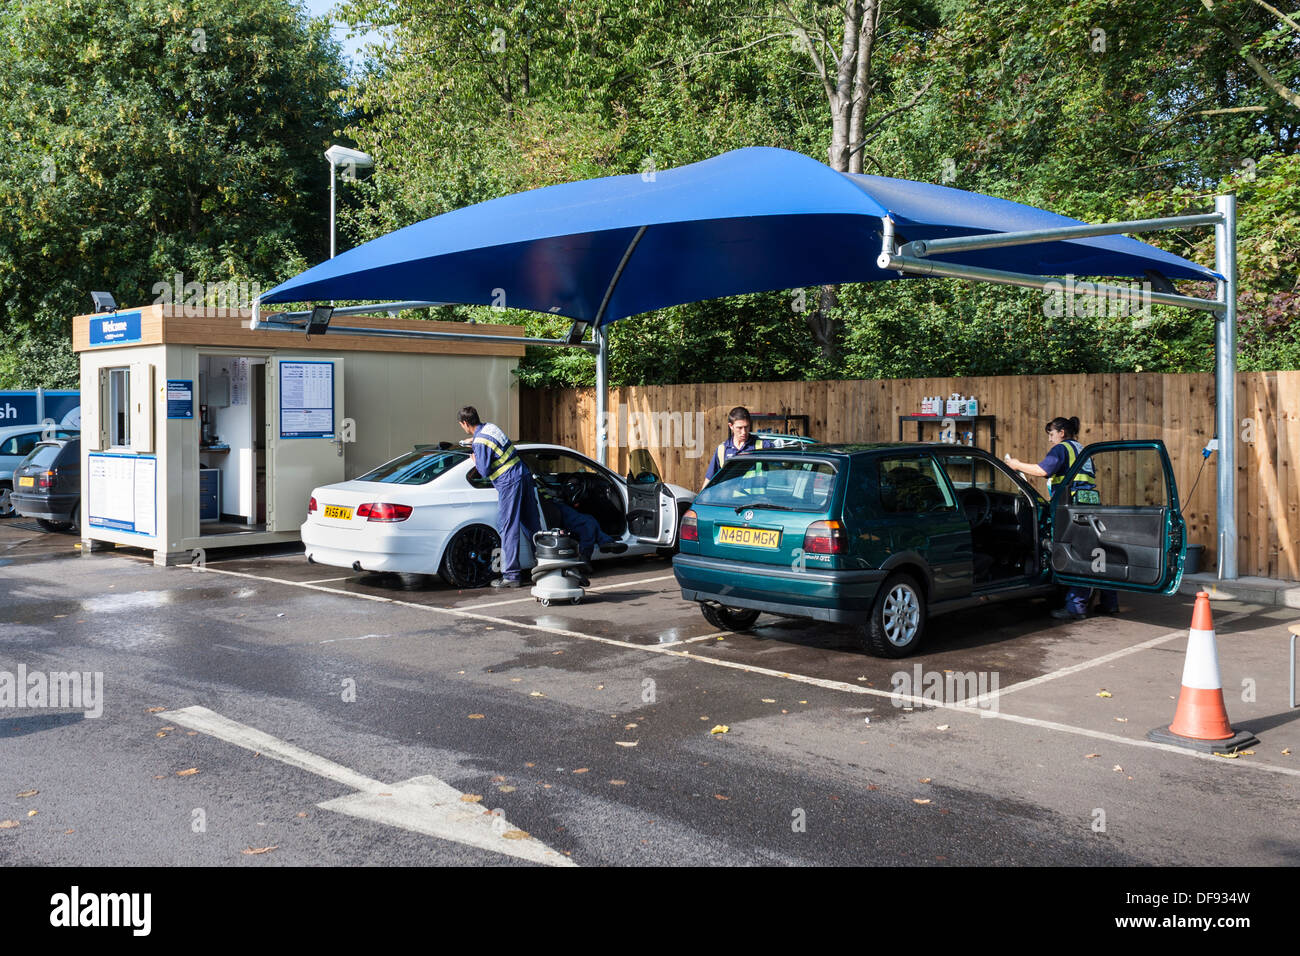 Côté service de lavage de voiture dans parking supermarché Tesco, Reading, Berkshire, England, GB, au Royaume-Uni. Banque D'Images